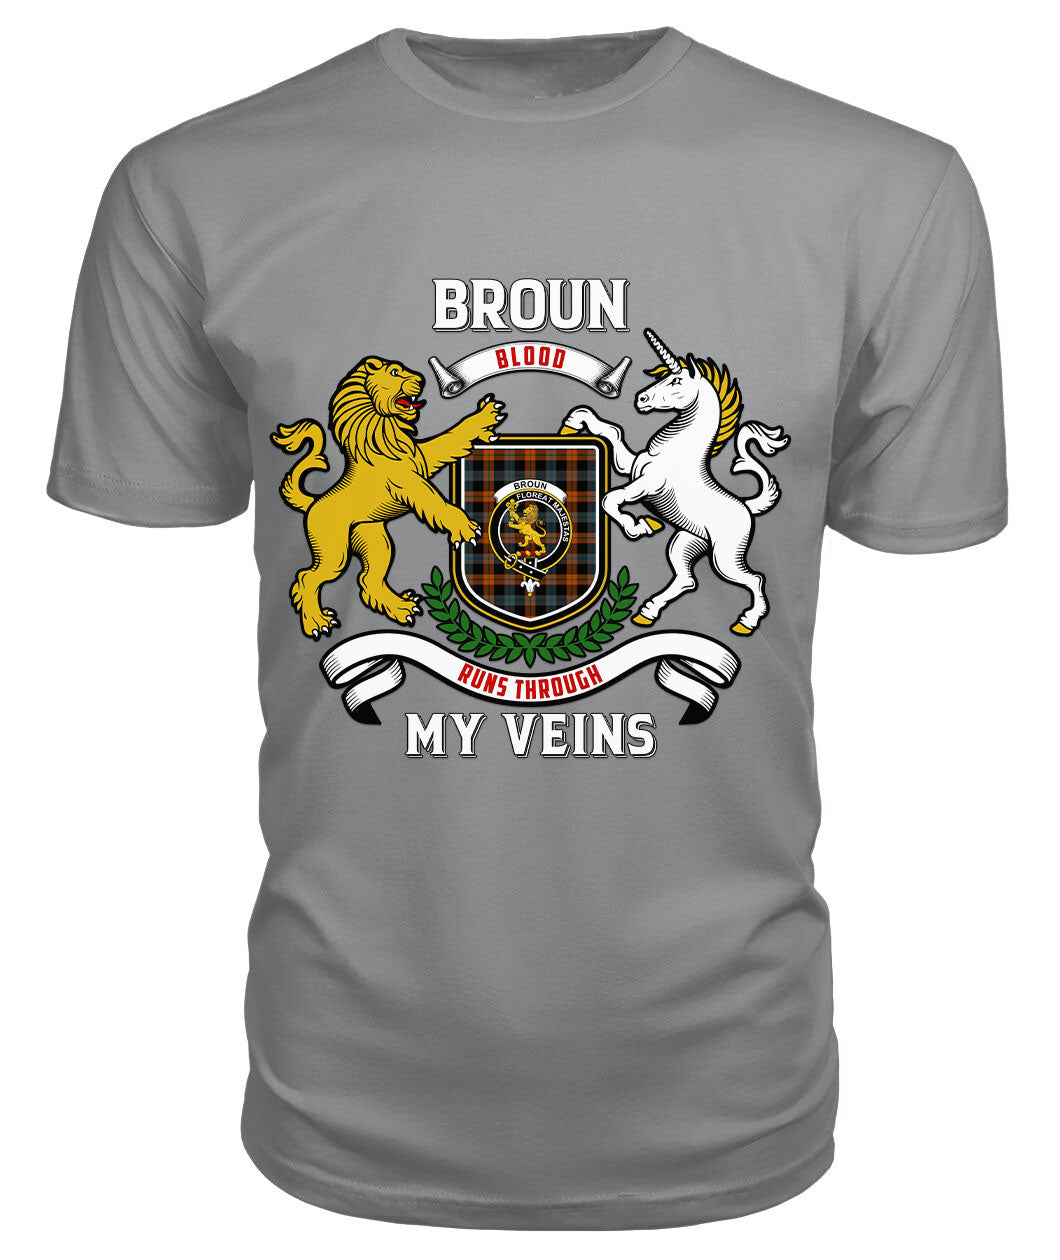 Broun Ancient Tartan Crest 2D T-shirt - Blood Runs Through My Veins Style